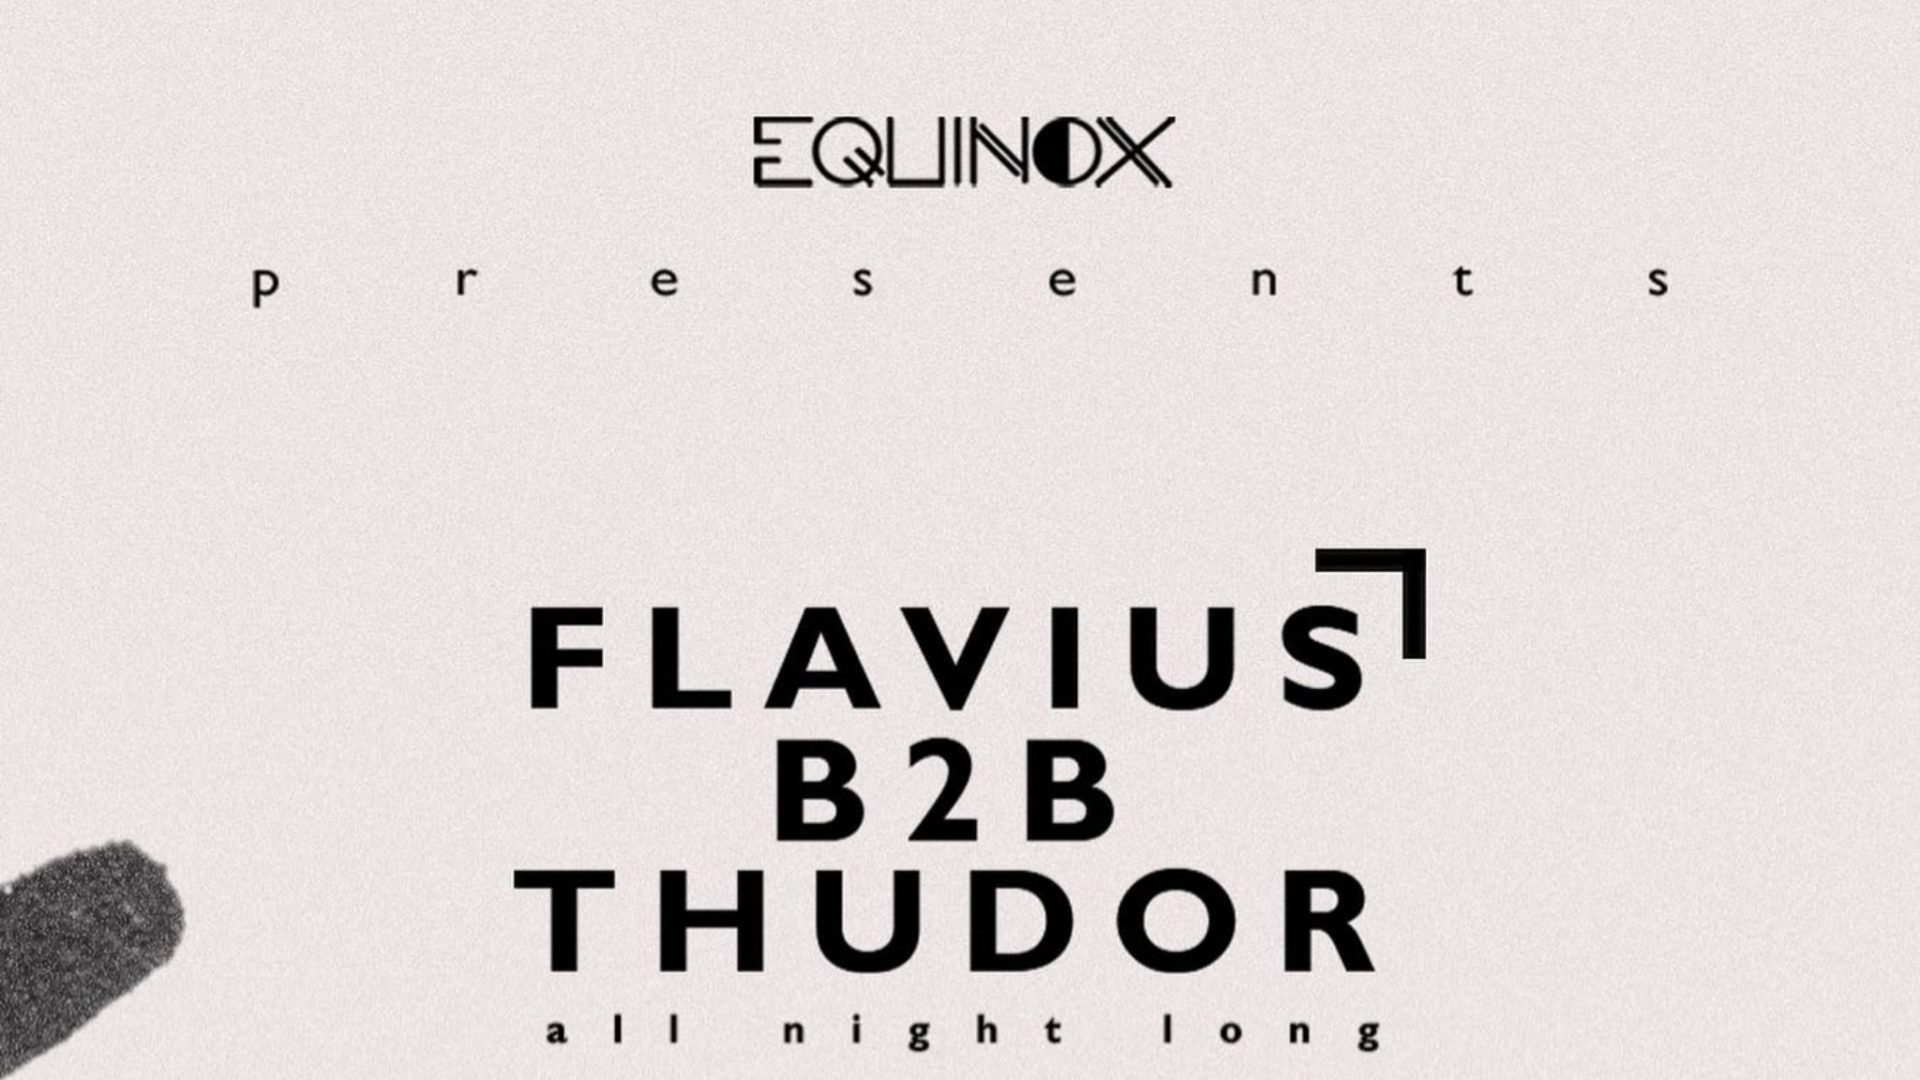 Equinox showcase: Flavius B2B Thudor | All night long